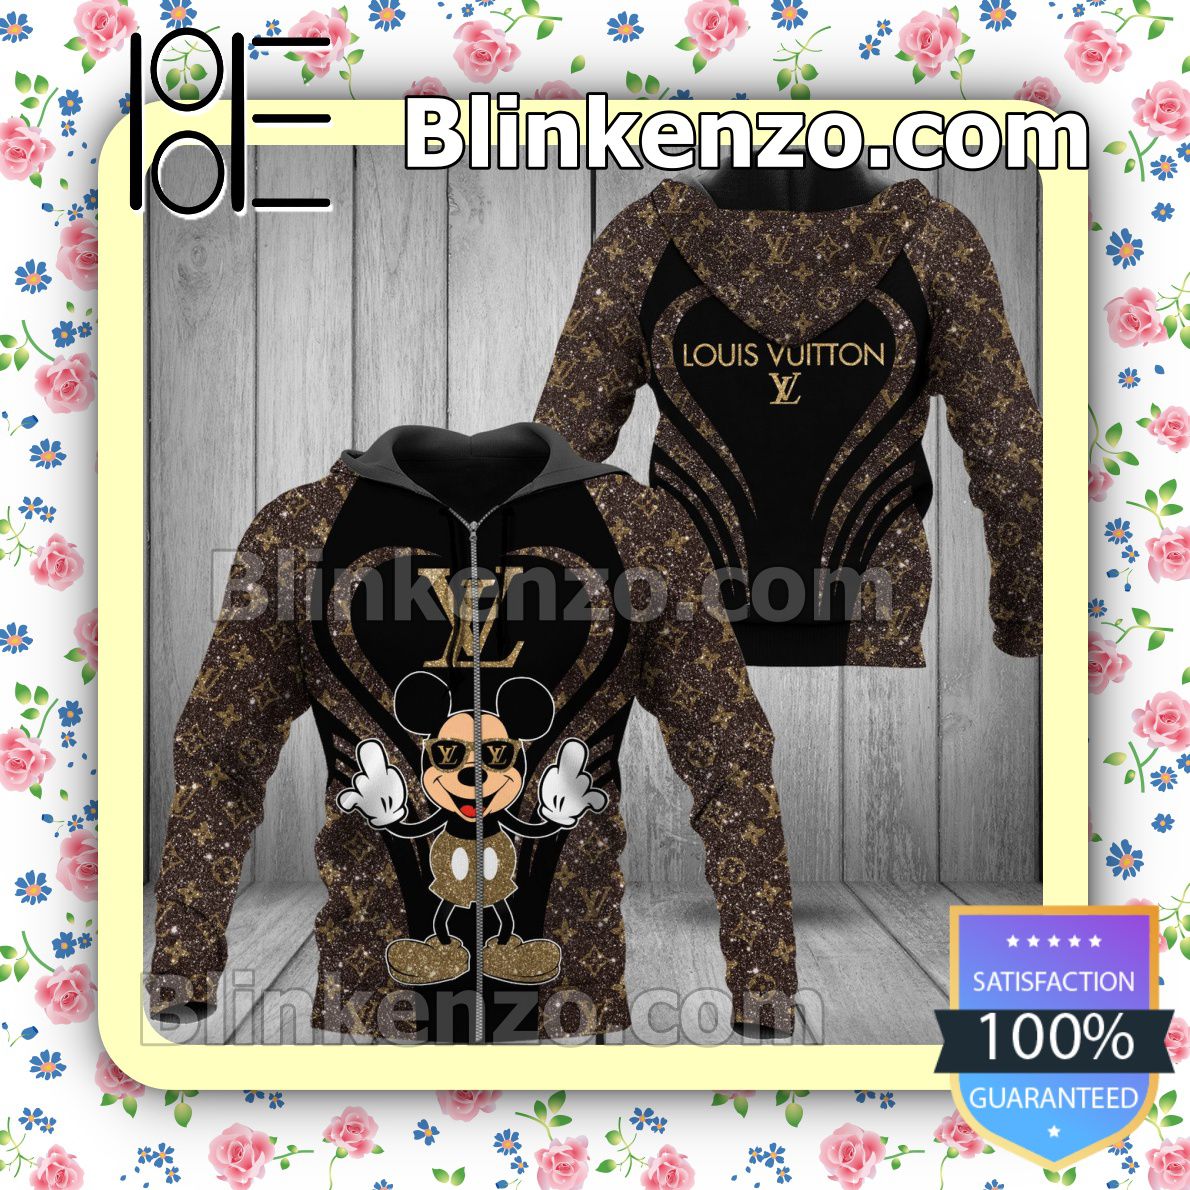 Sale Off Louis Vuitton Mickey Mouse Glitter Heart Full-Zip Hooded Fleece Sweatshirt